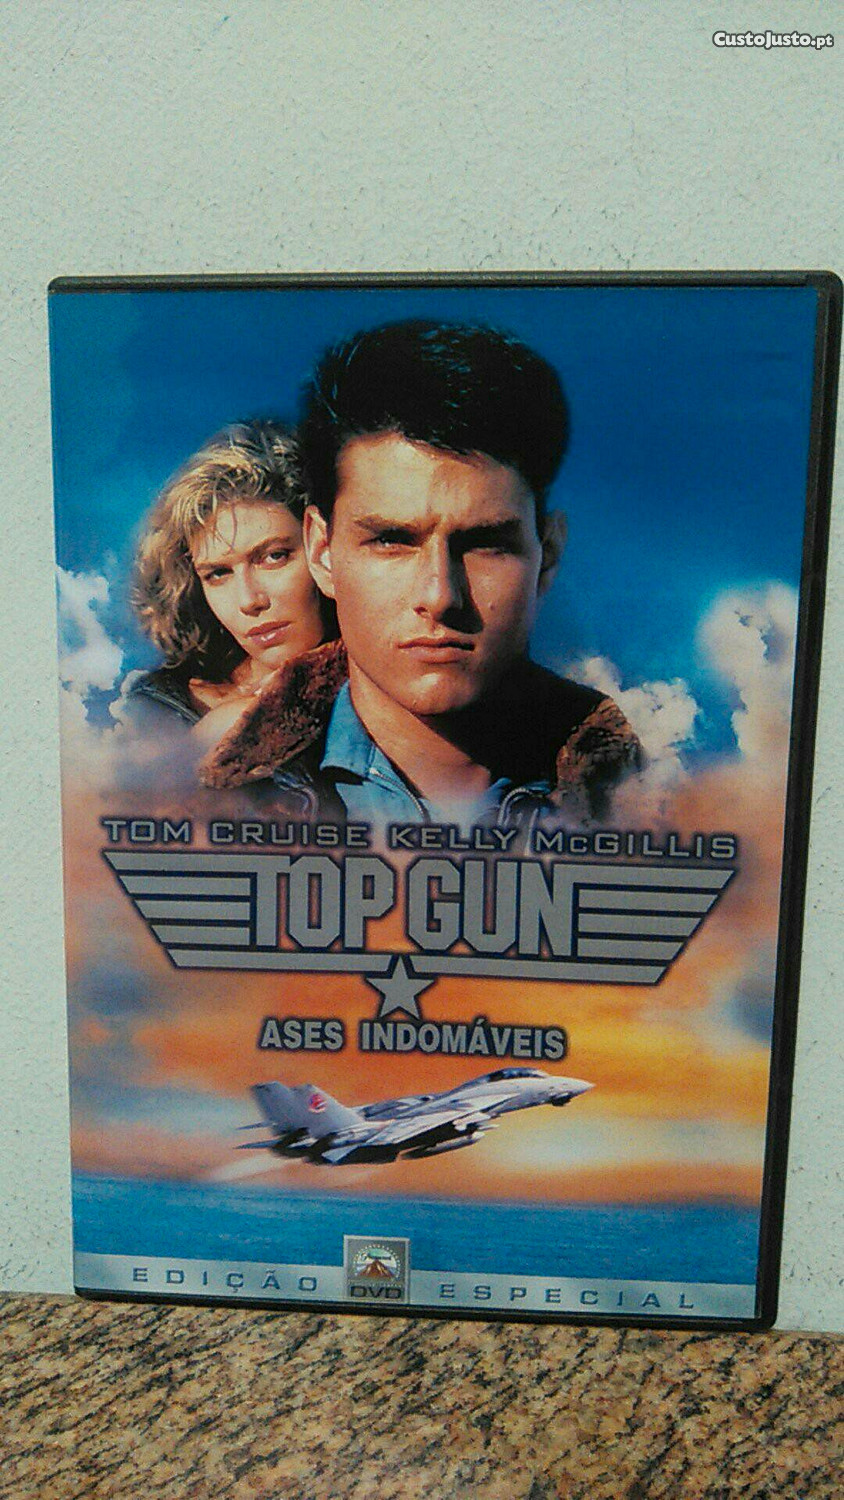 Top Gun (1986) - IMDb